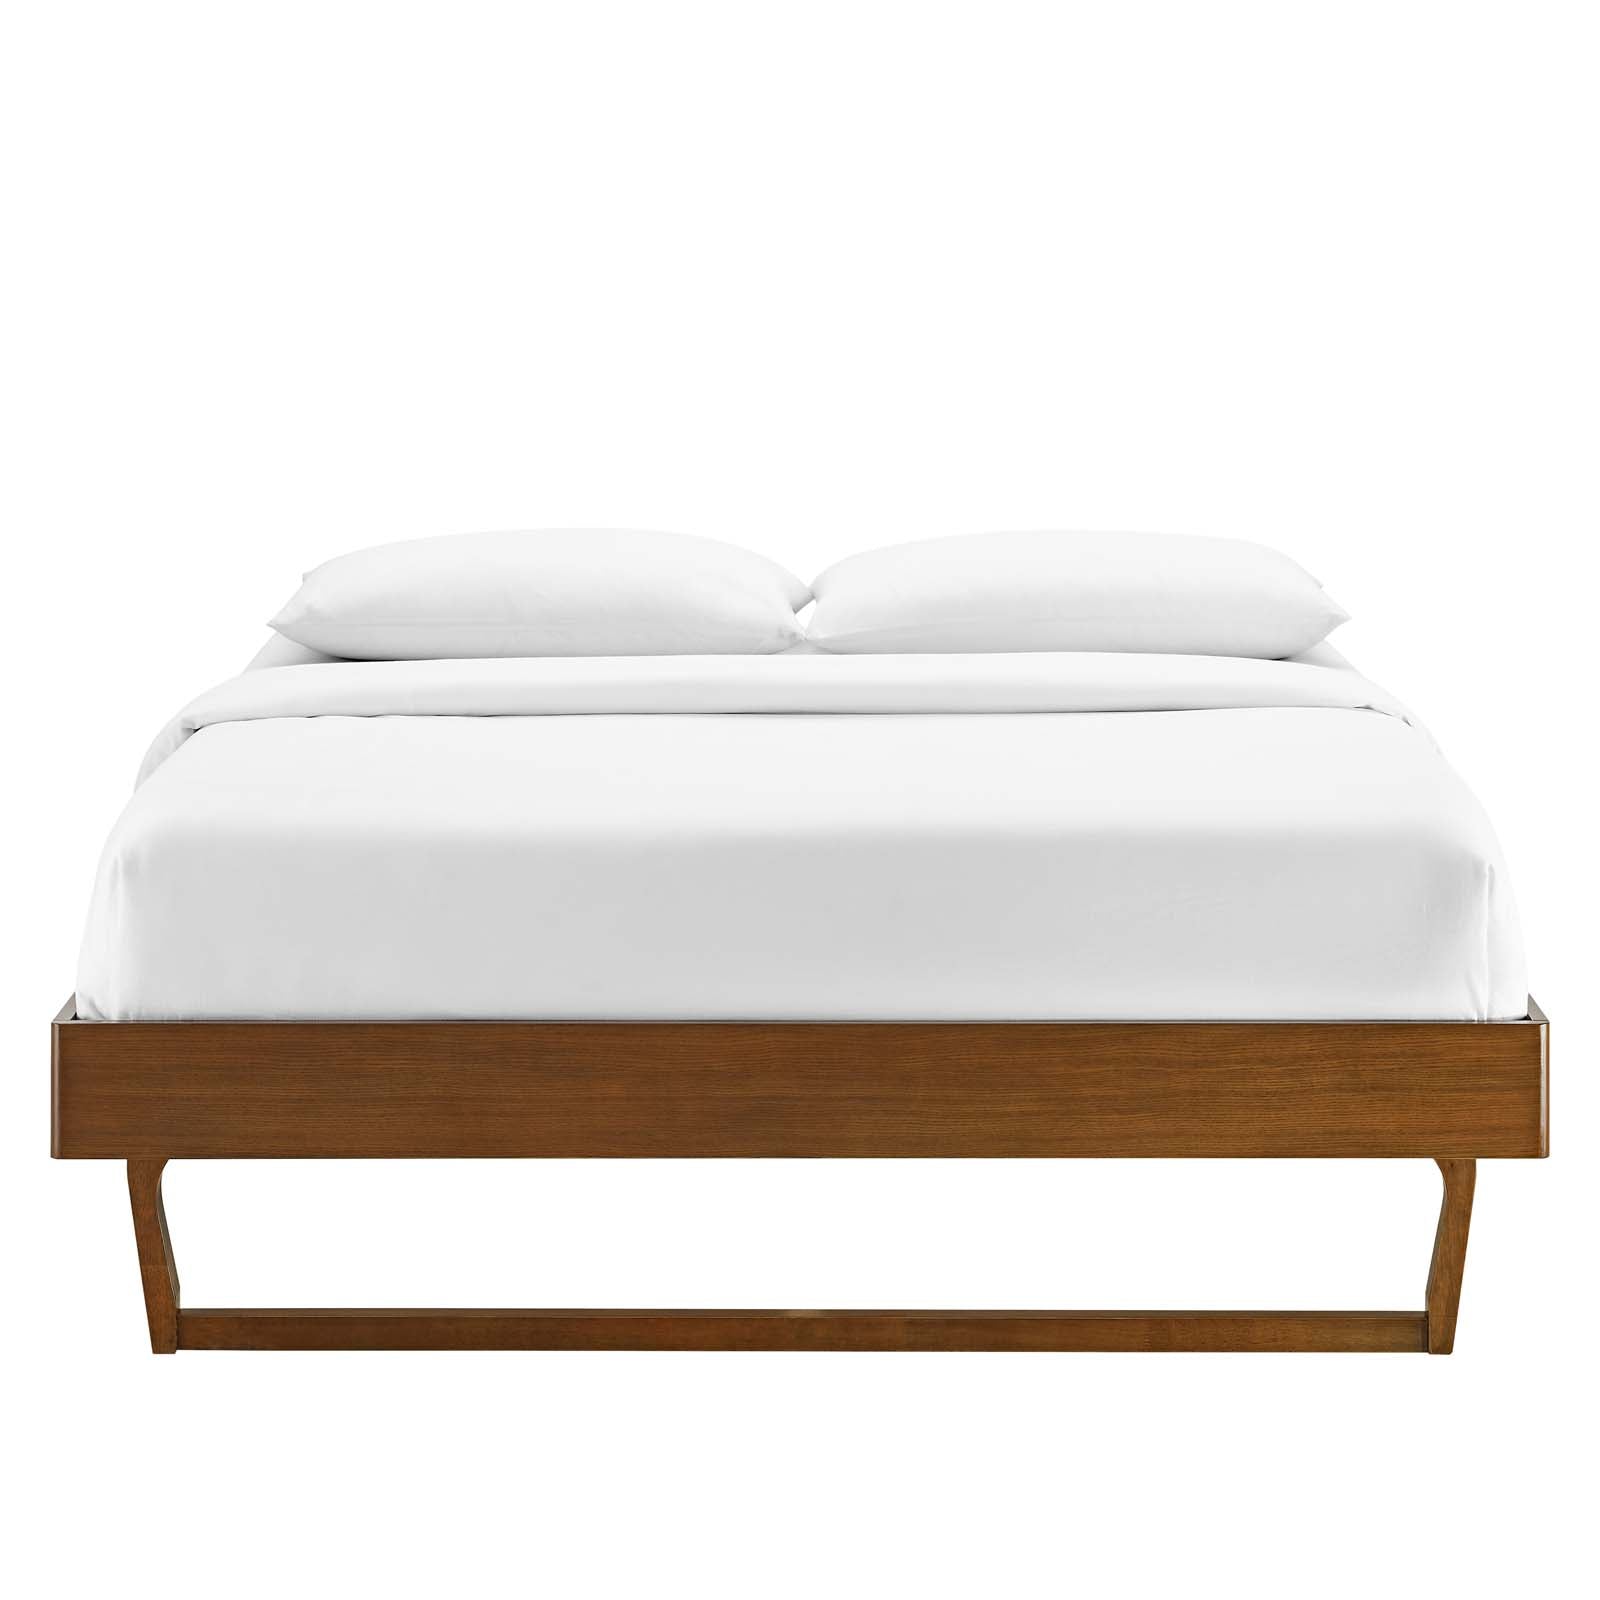 Modway Beds - Billie King Wood Platform Bed Frame Walnut